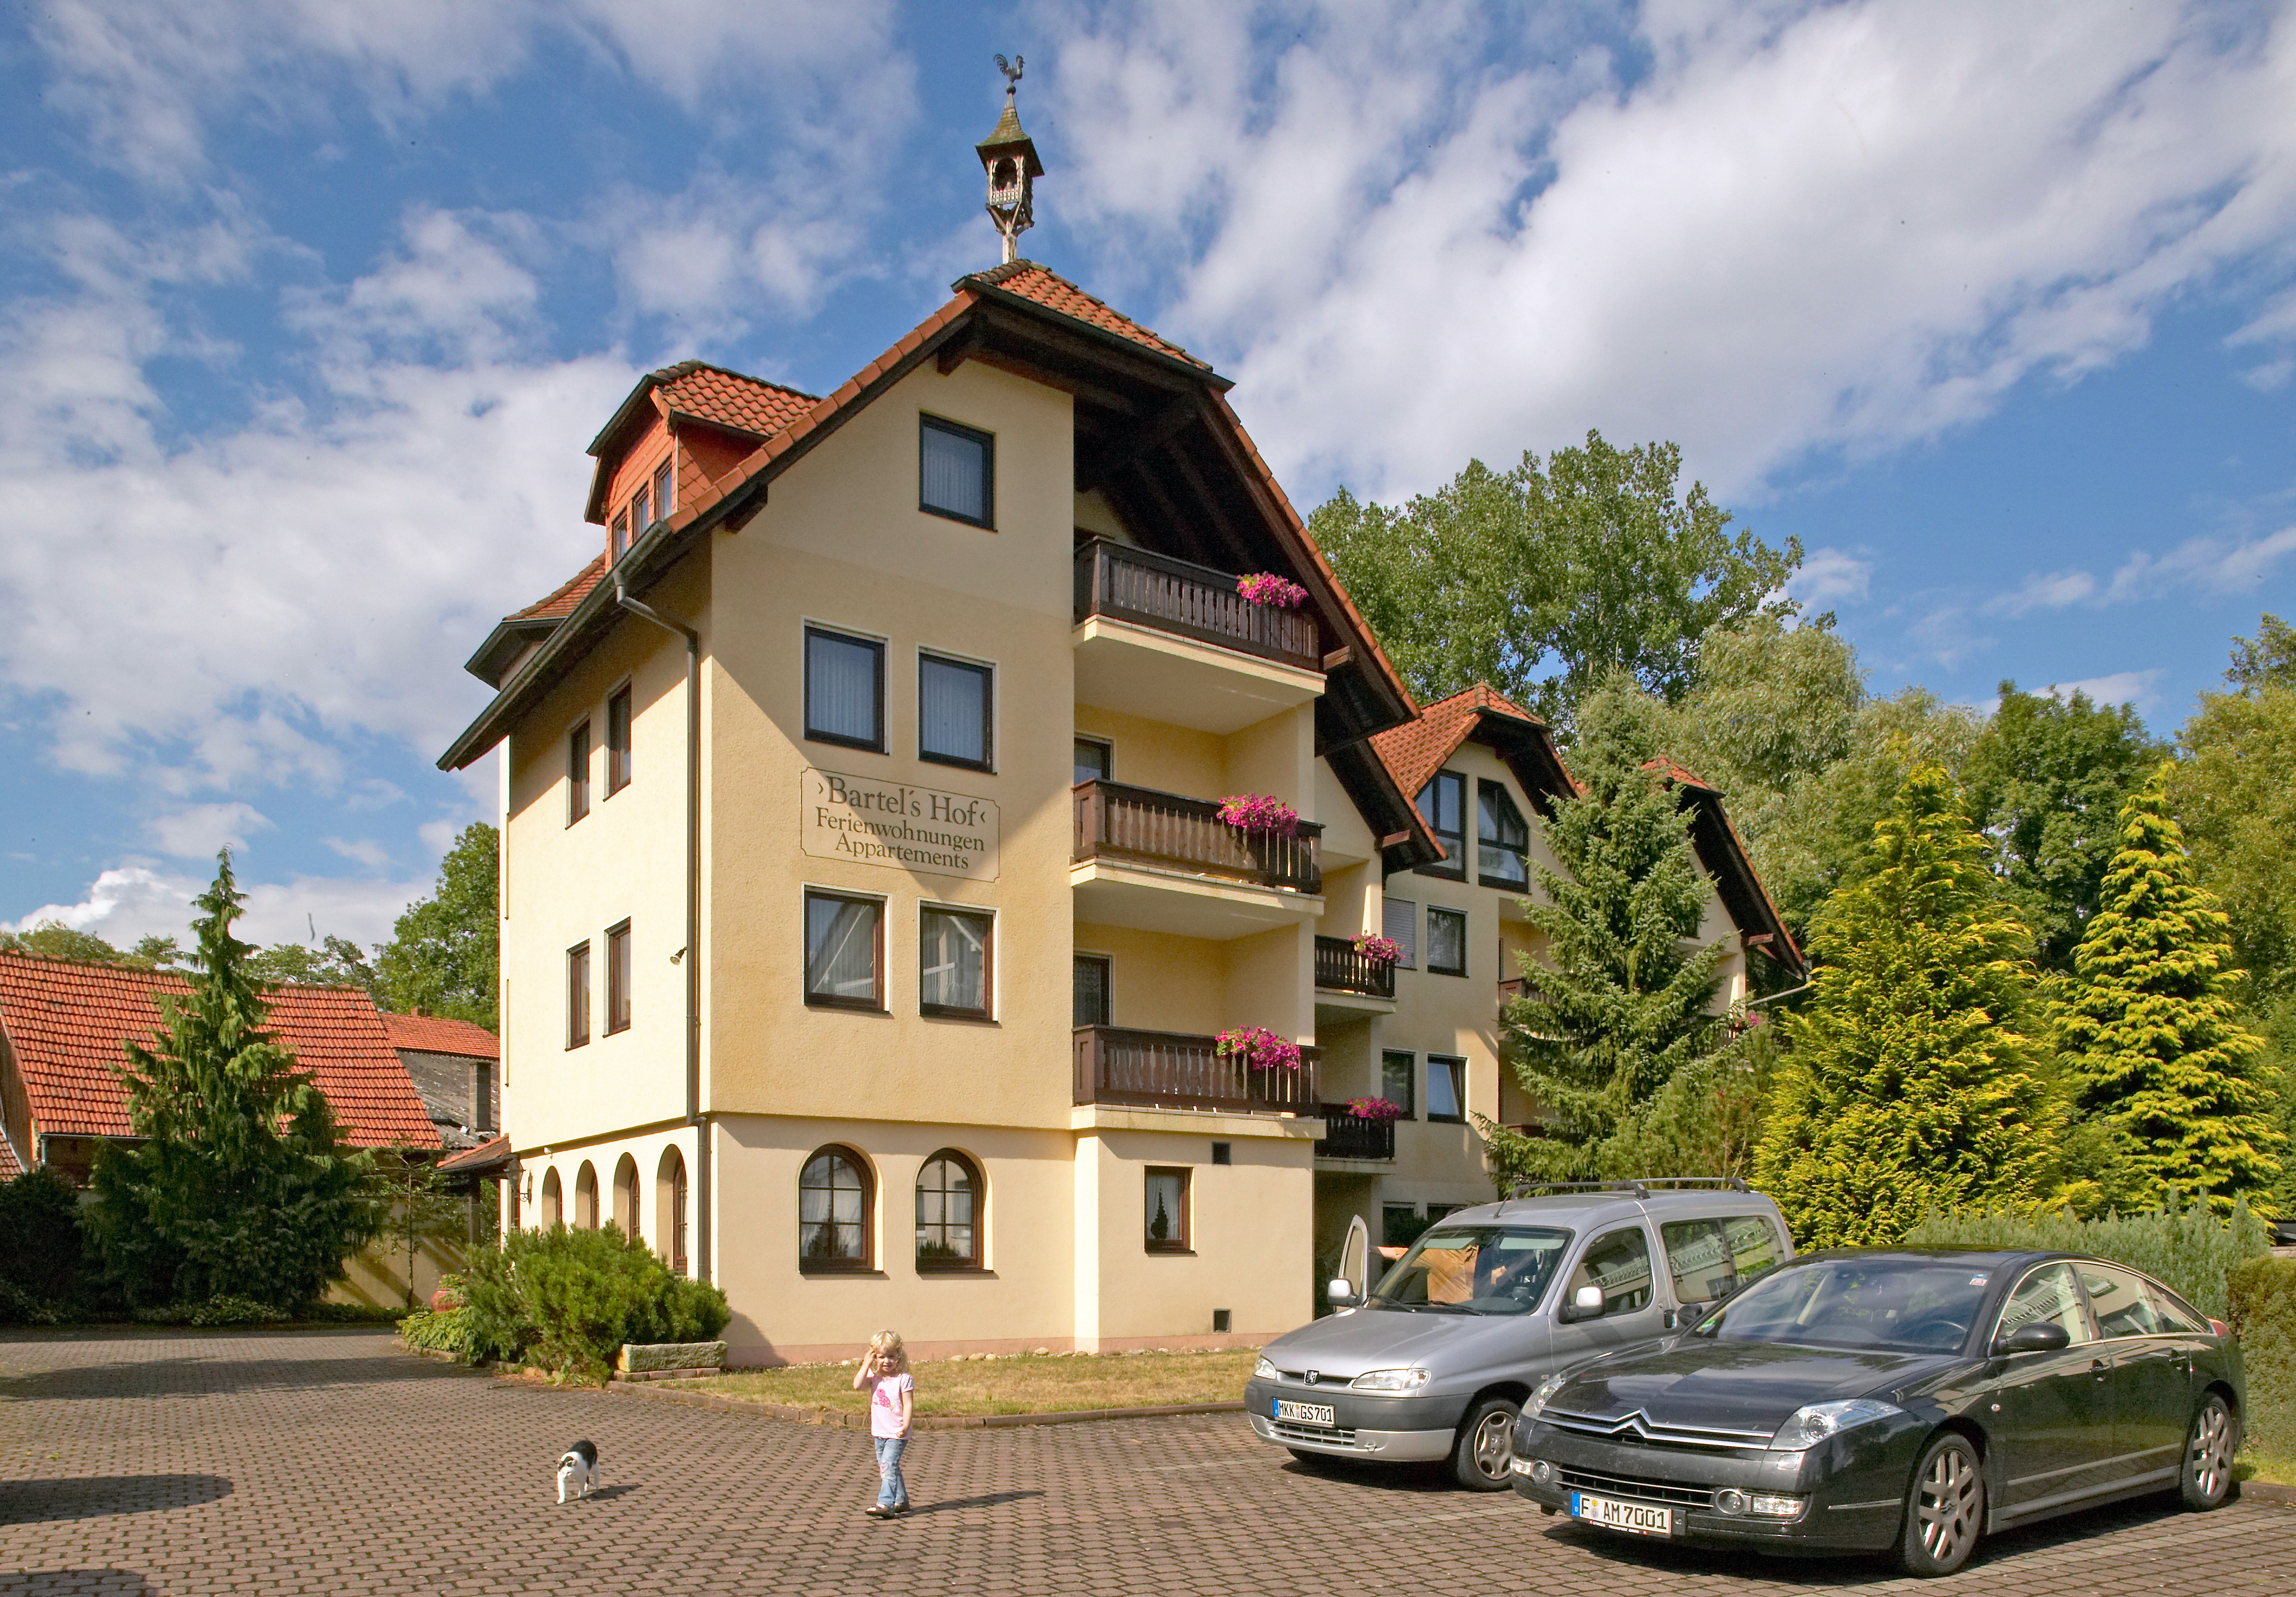 Bartelshof Appartementhaus Ferienwohnung in Deutschland